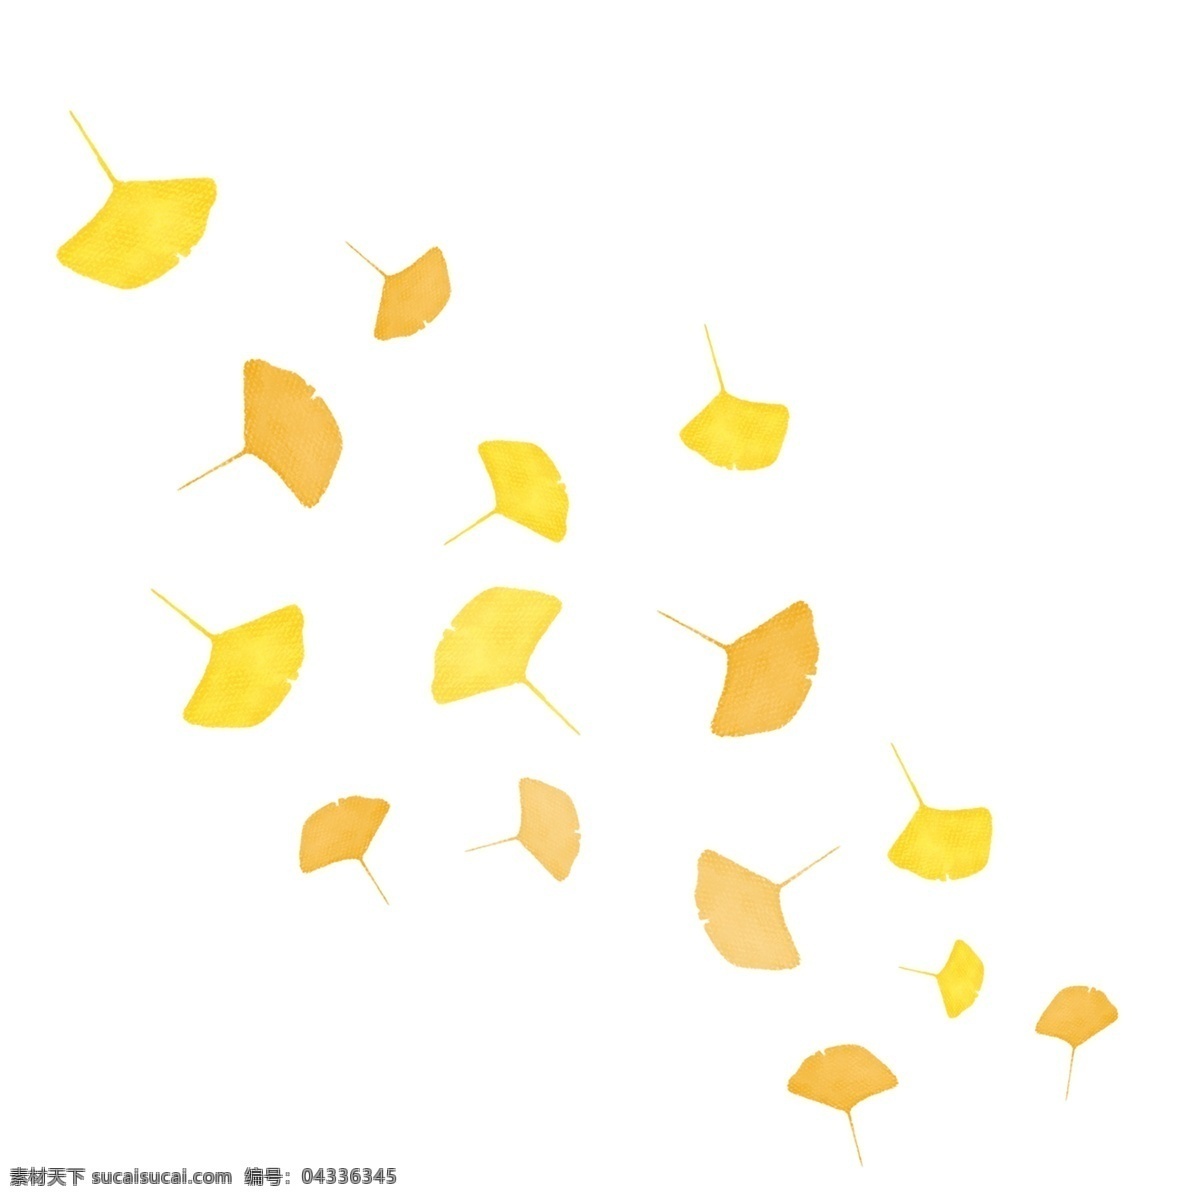 风吹 散 落叶 漂浮 吹风效果 风 飘落 飘散 飘洒 散落 叶子 banner 海报 秋季 秋天 方向 动感